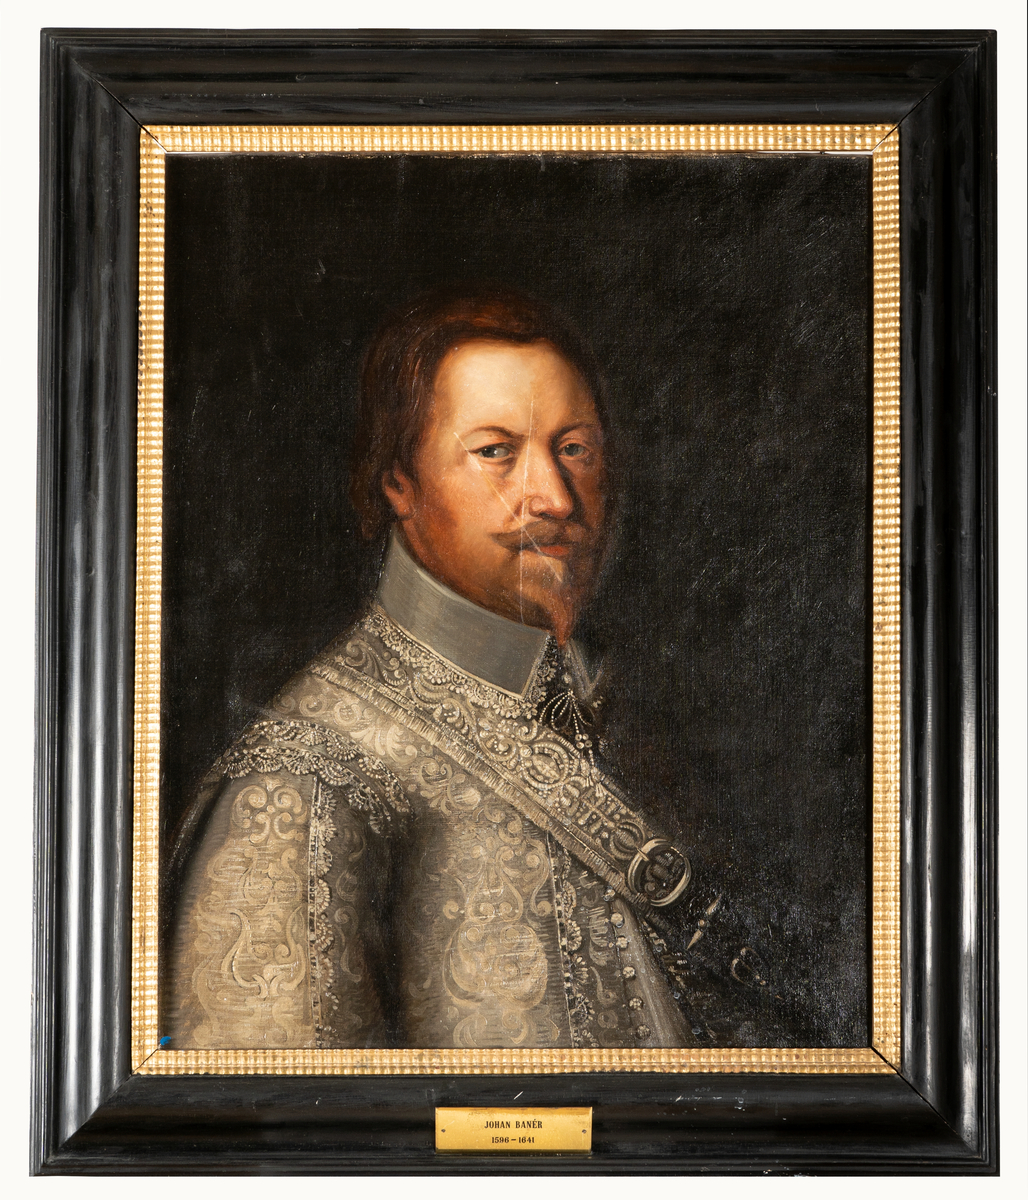 Porträtt av Johan Banér, modern kopia. Olja på duk, svart ram.
Okänd konstnär, kopia.